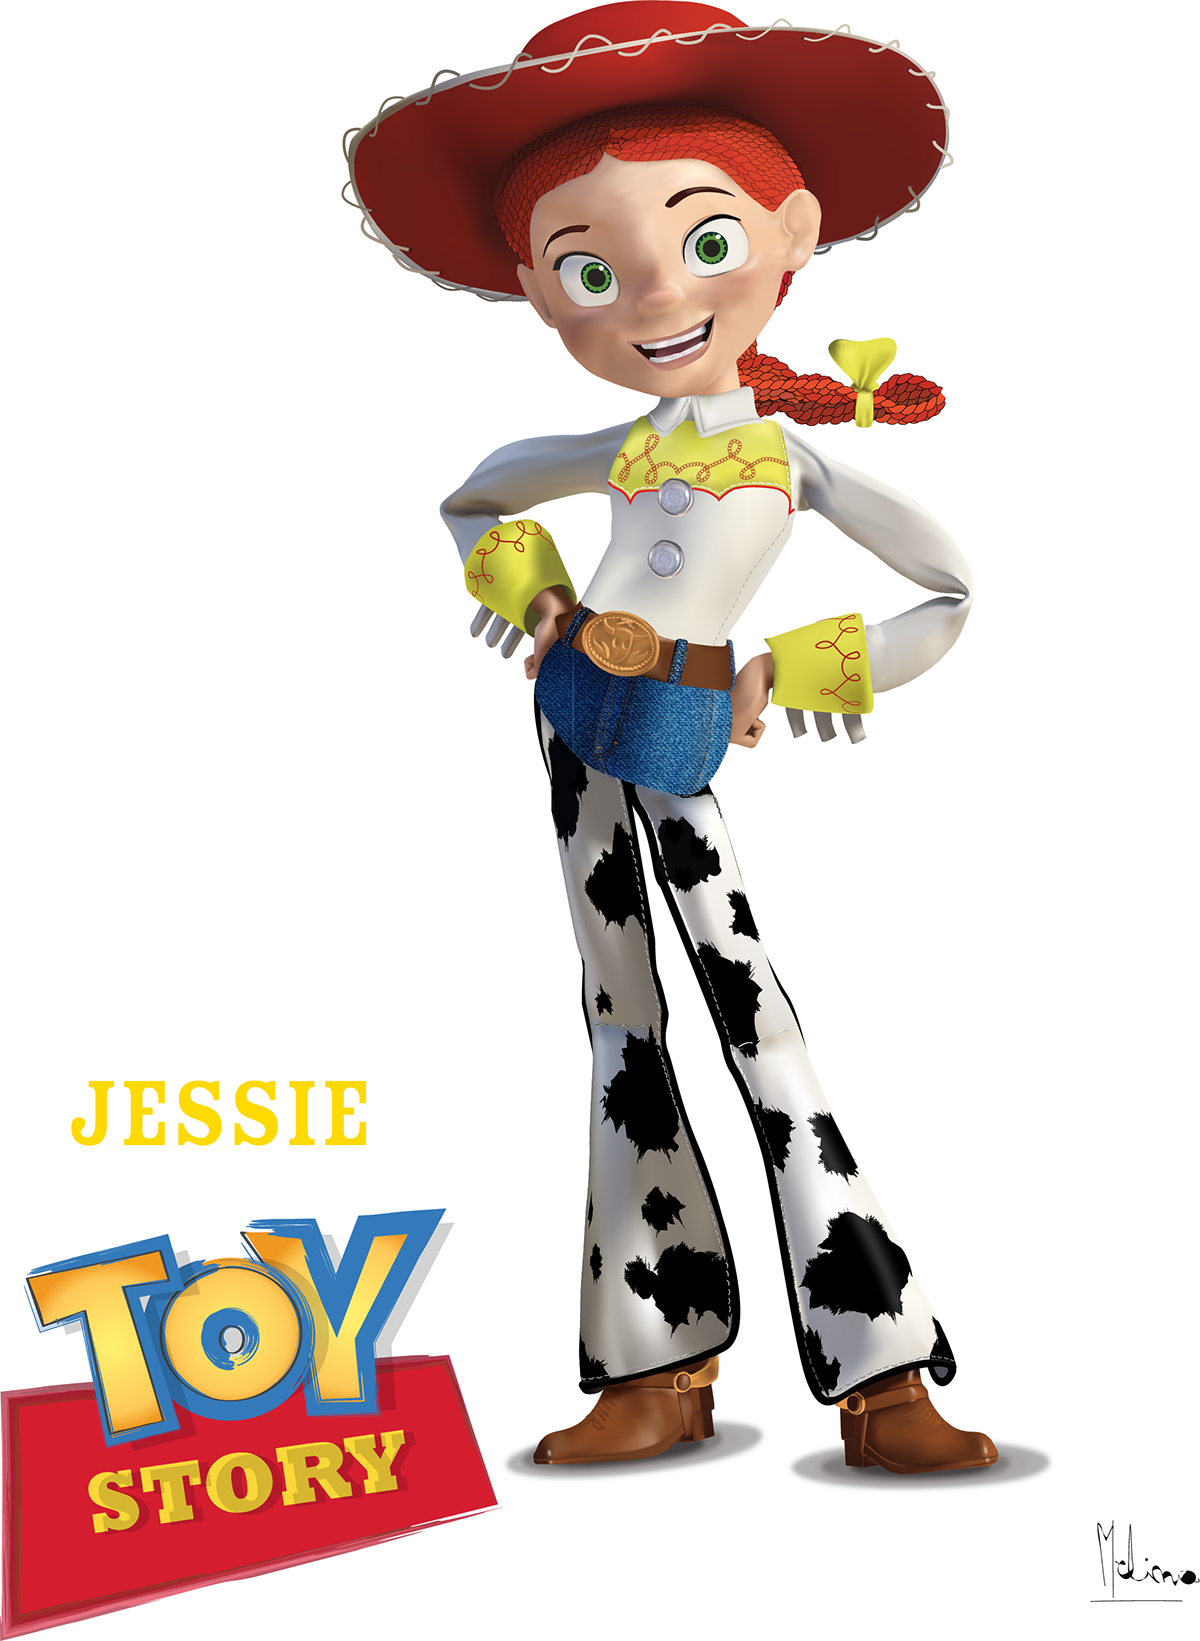 Джесси из истории игрушек 2. Джесси Toy story. Toy story 3 Джесси. Jessie Toy story персонажи. Jessie toy